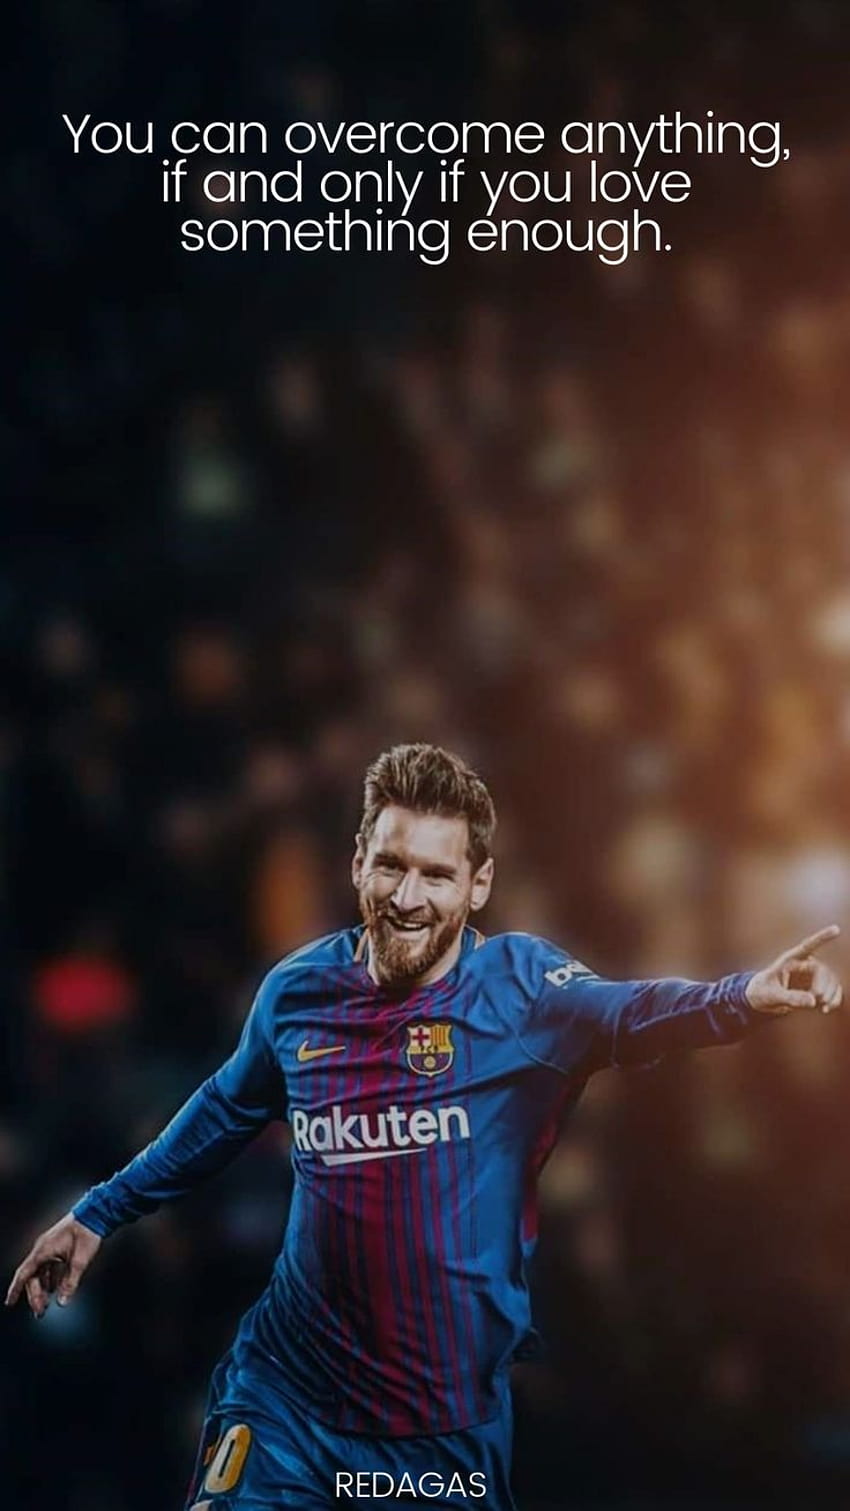 Câu nói cảm hứng của Lionel Messi là một nguồn cảm hứng không thể thiếu cho những người yêu bóng đá và Messi. Hãy xem hình ảnh liên quan để khám phá những lời nói đầy ý nghĩa của ngôi sao này.